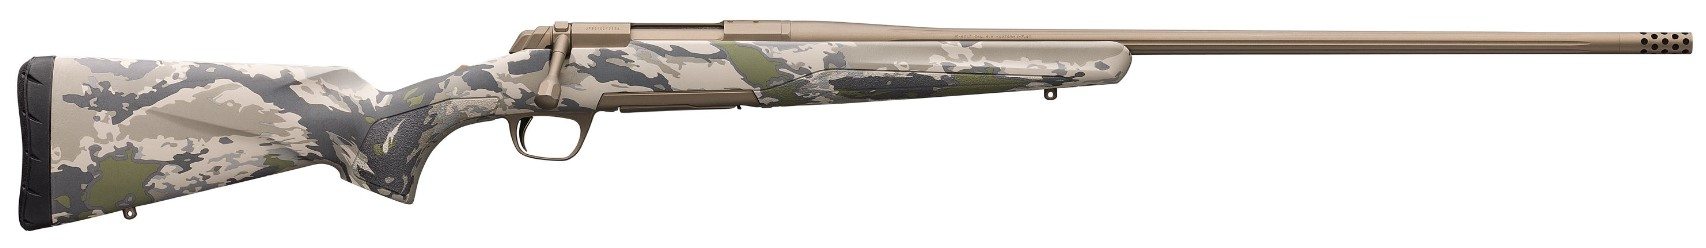 BRN X-BOLT SPD OVIX 308 22 4RD - Long Guns